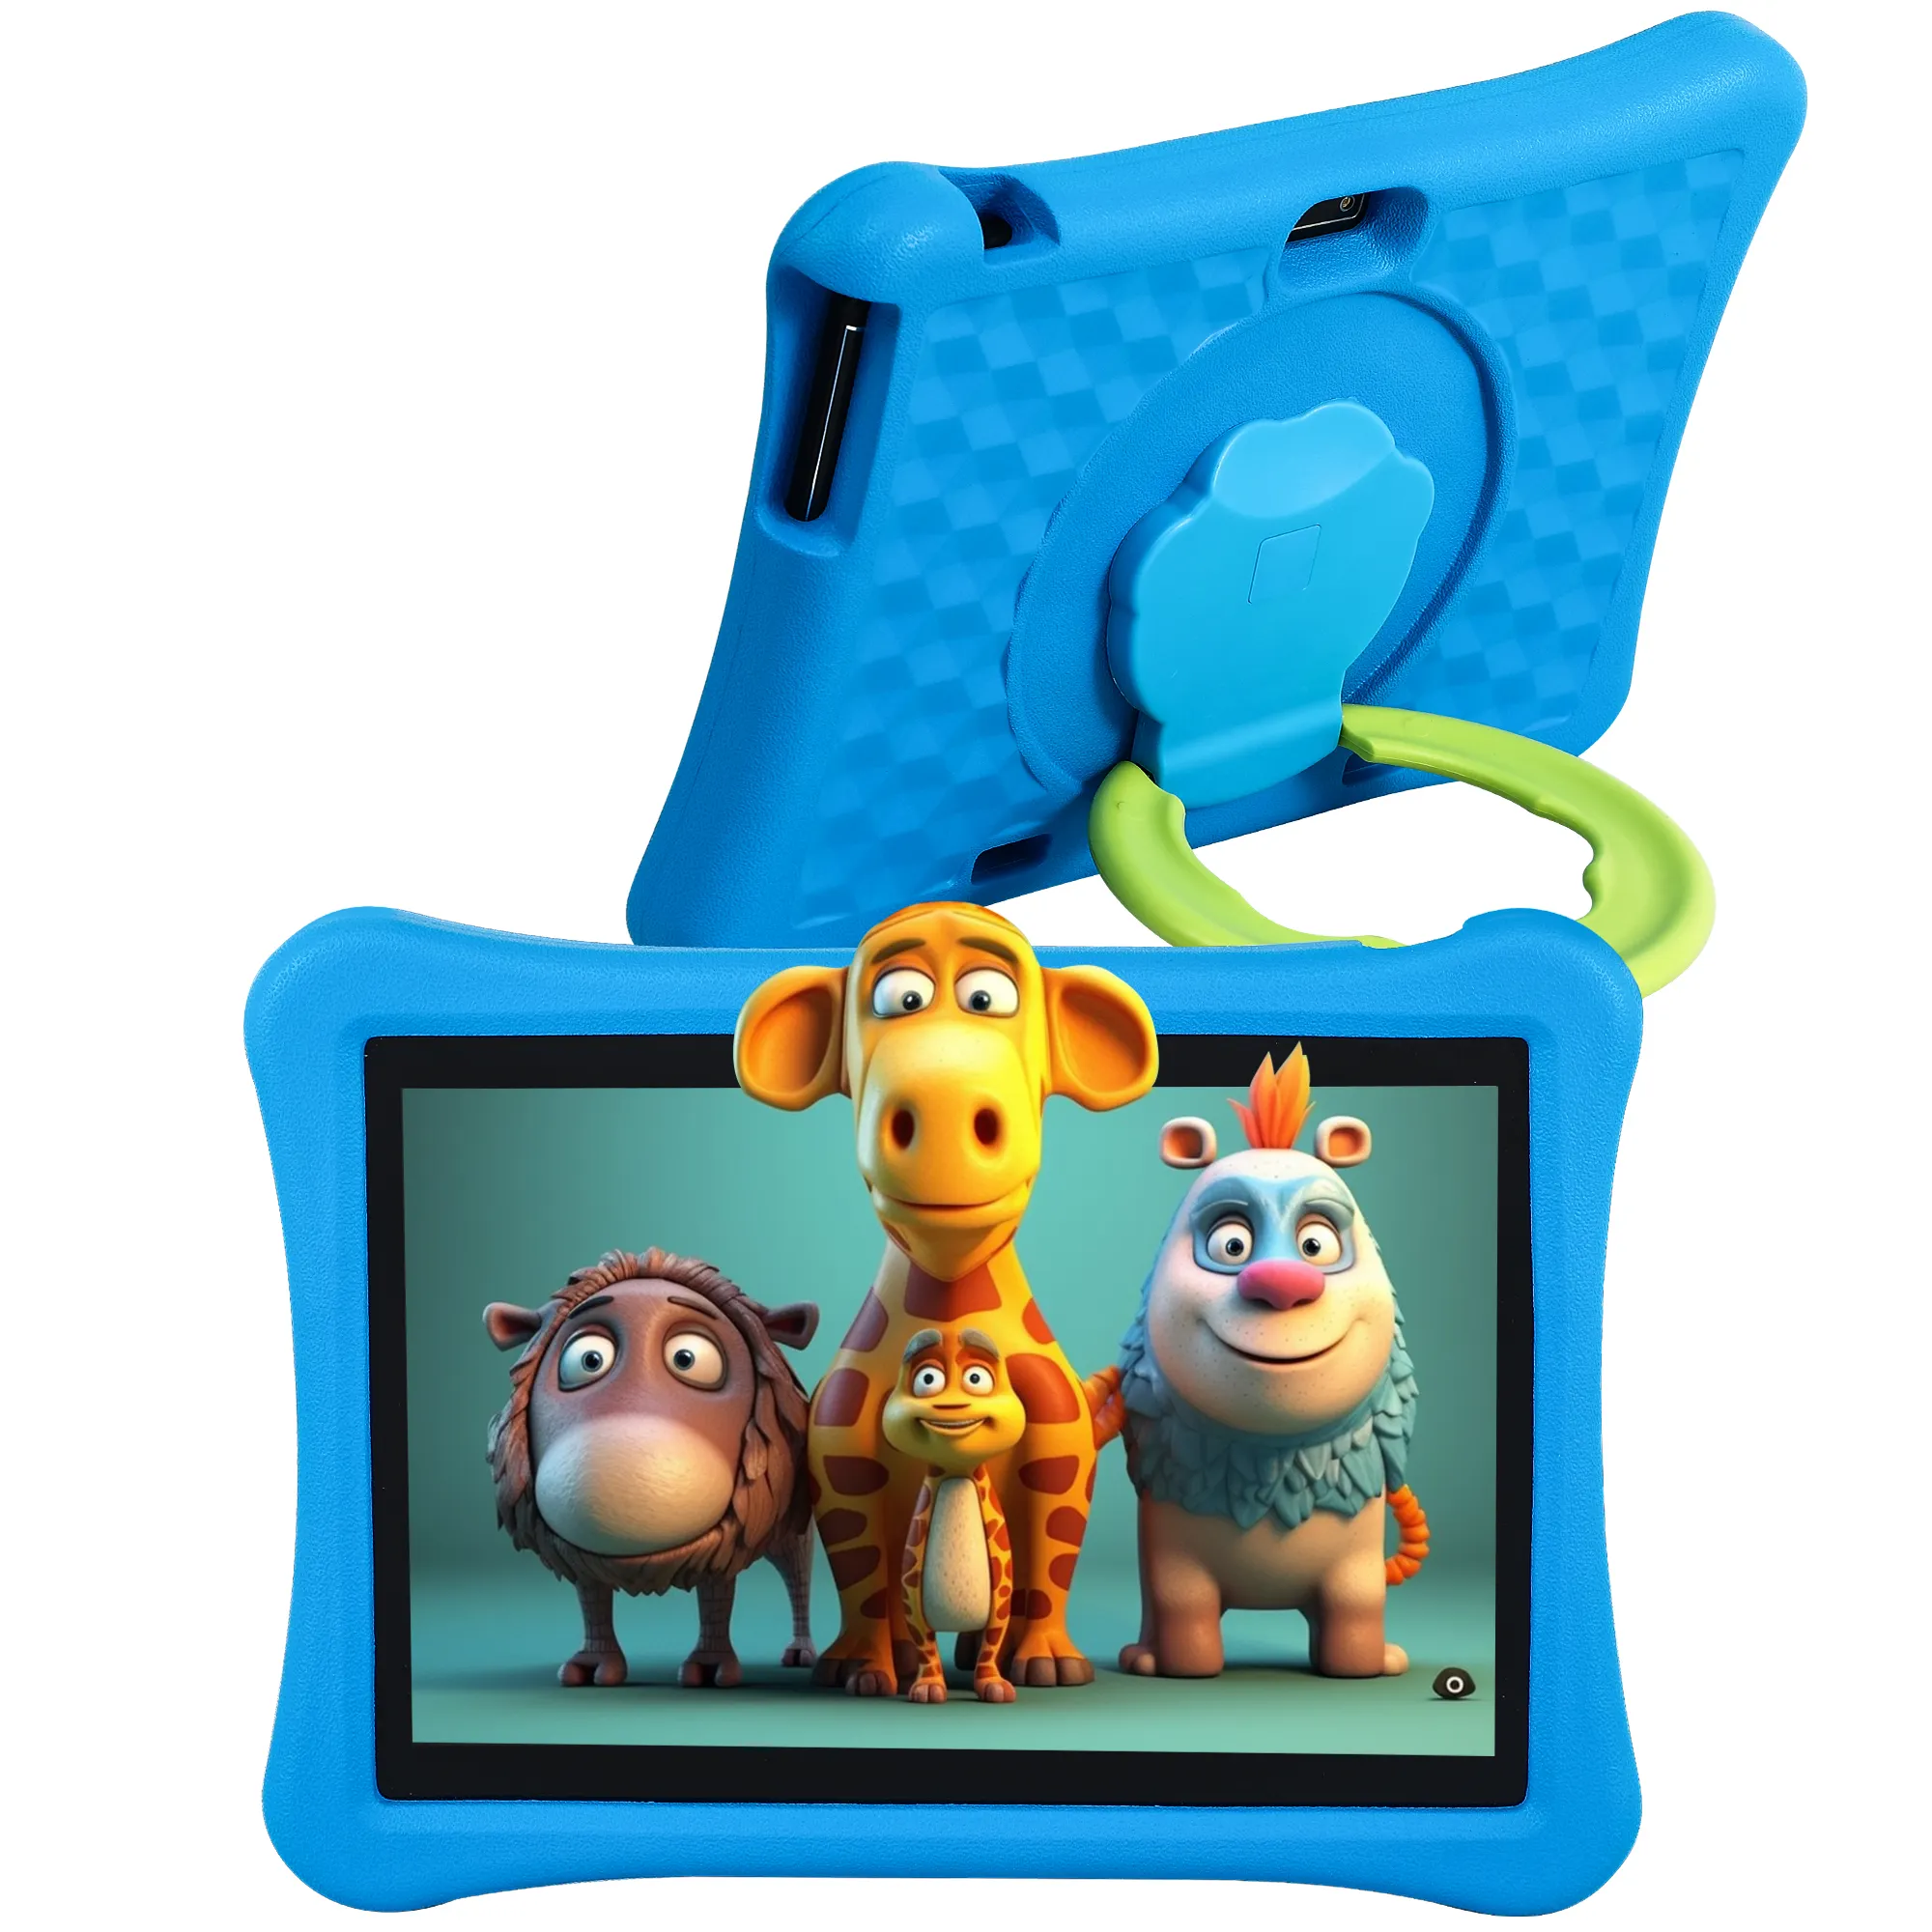 جهاز كمبيوتر لوحي Veidoo شاشة 10 بوصات يعمل بنظام Android للأطفال مع ذاكرة وصول عشوائي سعة 8 جيجابايت وذاكرة قراءة فقط سعة 64 جيجابايت (تطويل 4+4) مع خاصية حماية الطفل من الصدمات ومزود بتطبيق التحكم الأبوي